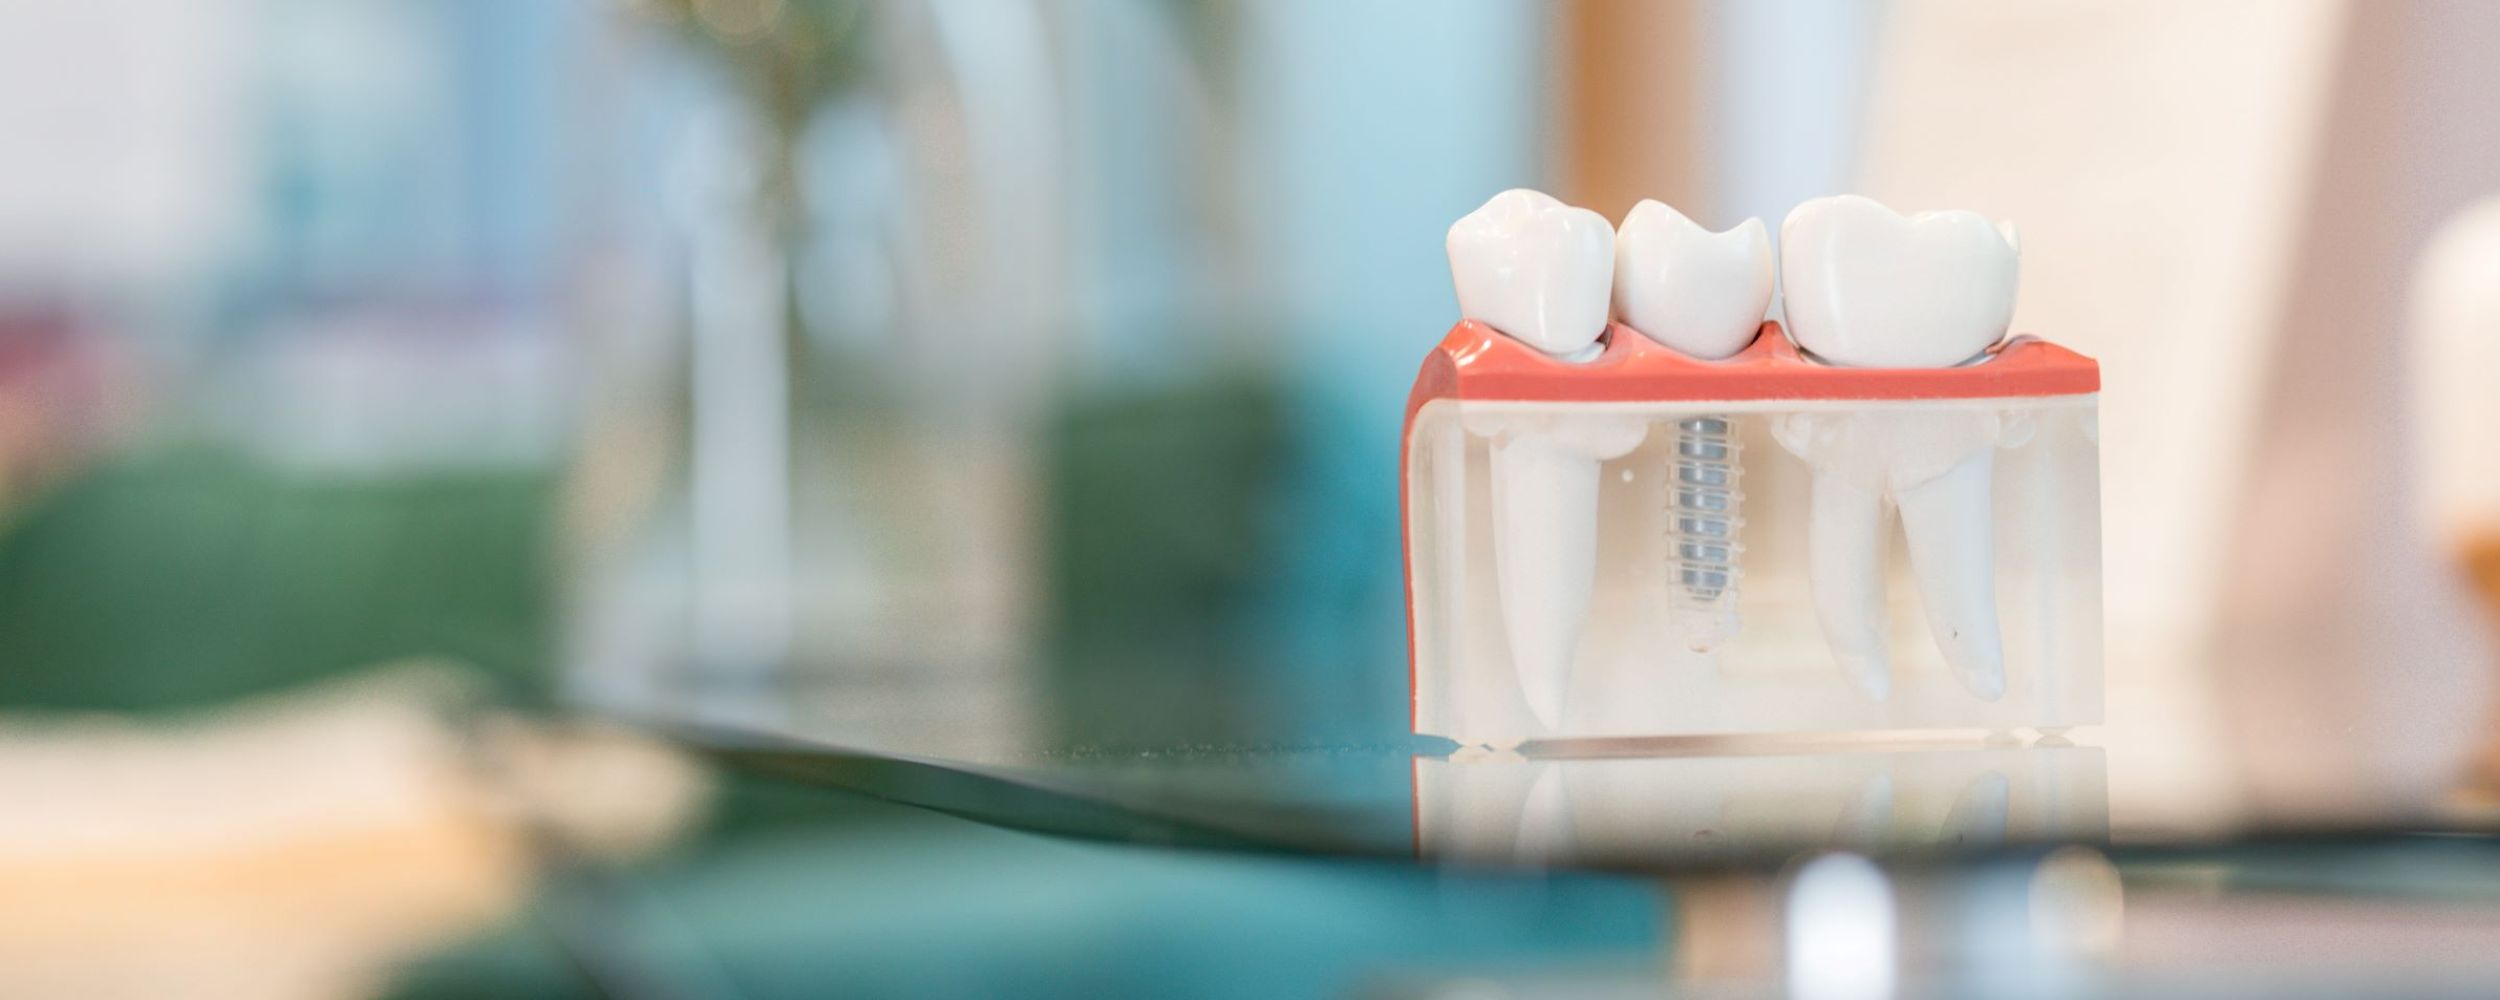 Multiple teeth dental implants